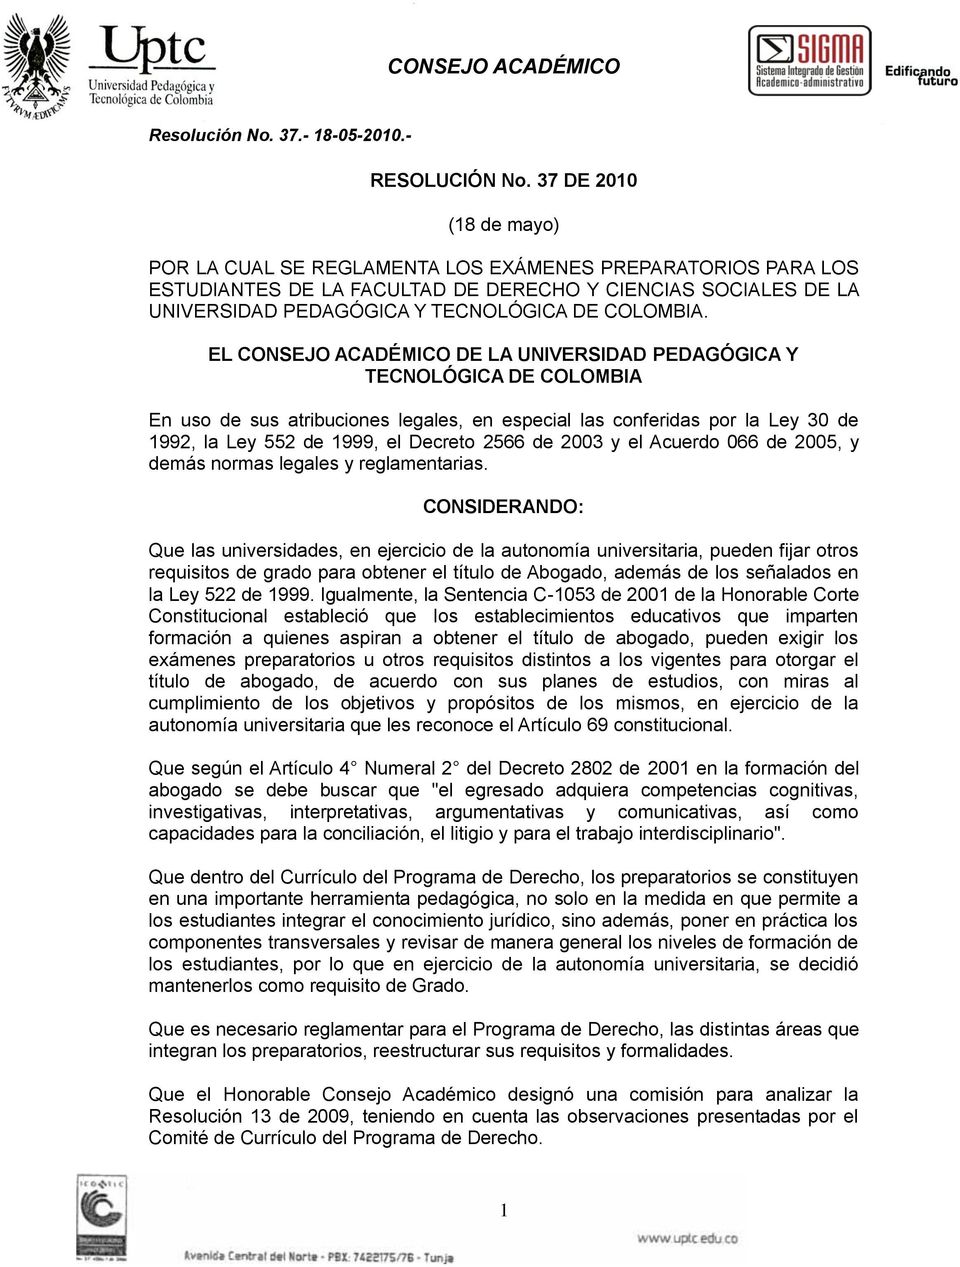 EL CONSEJO ACADÉMICO DE LA UNIVERSIDAD PEDAGÓGICA Y TECNOLÓGICA DE COLOMBIA En uso de sus atribuciones legales, en especial las conferidas por la Ley 30 de 1992, la Ley 552 de 1999, el Decreto 2566